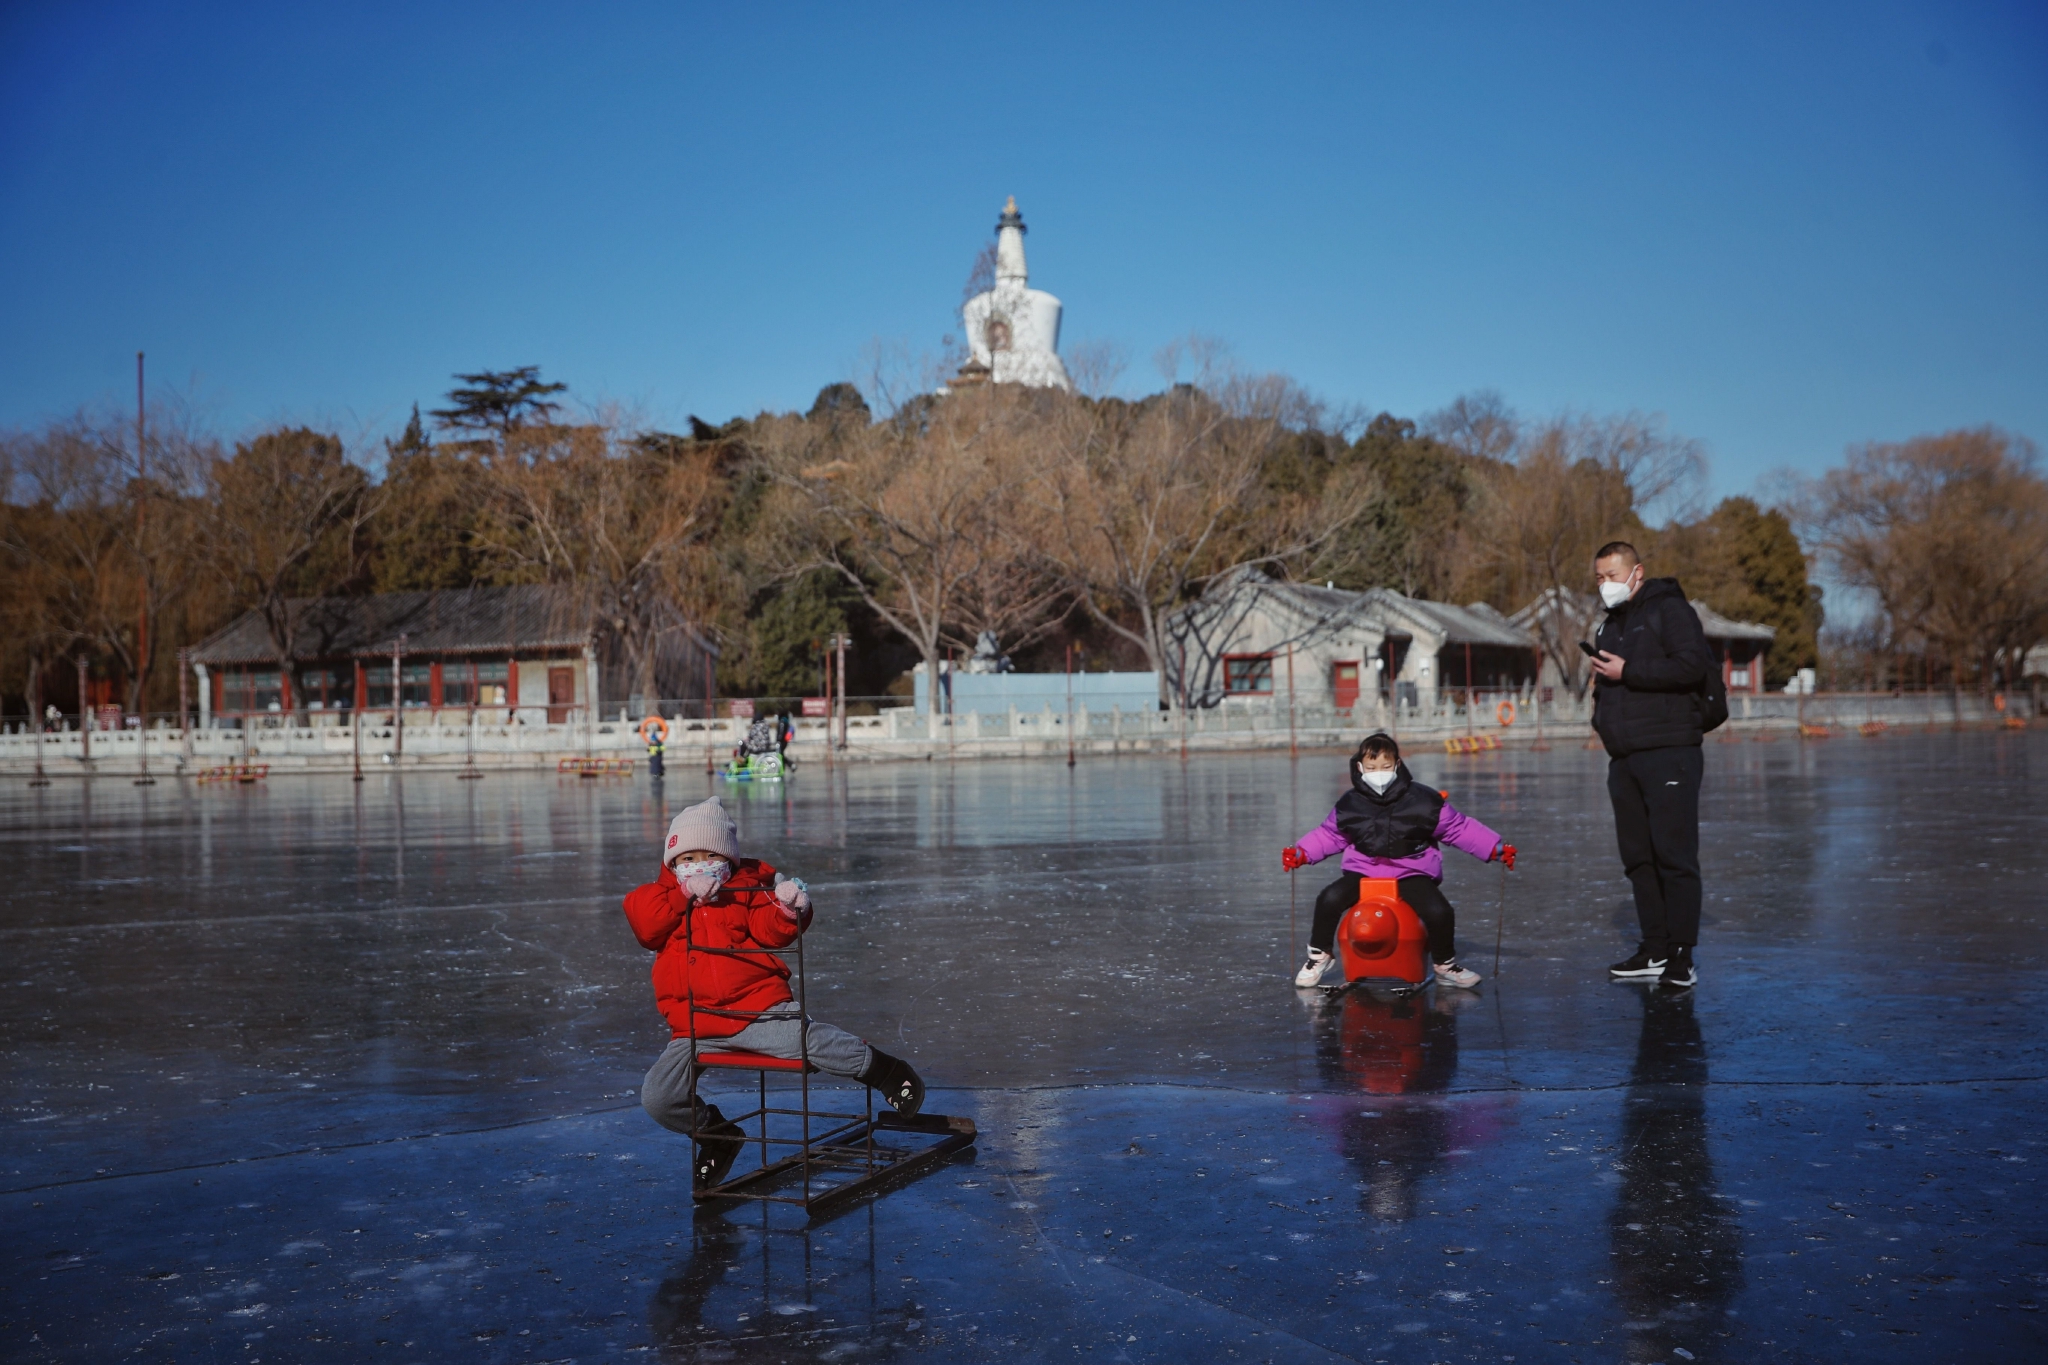 【携程攻略】北京后海公园景点,冬天来这里滑冰，可以做冰车小朋友很喜欢。